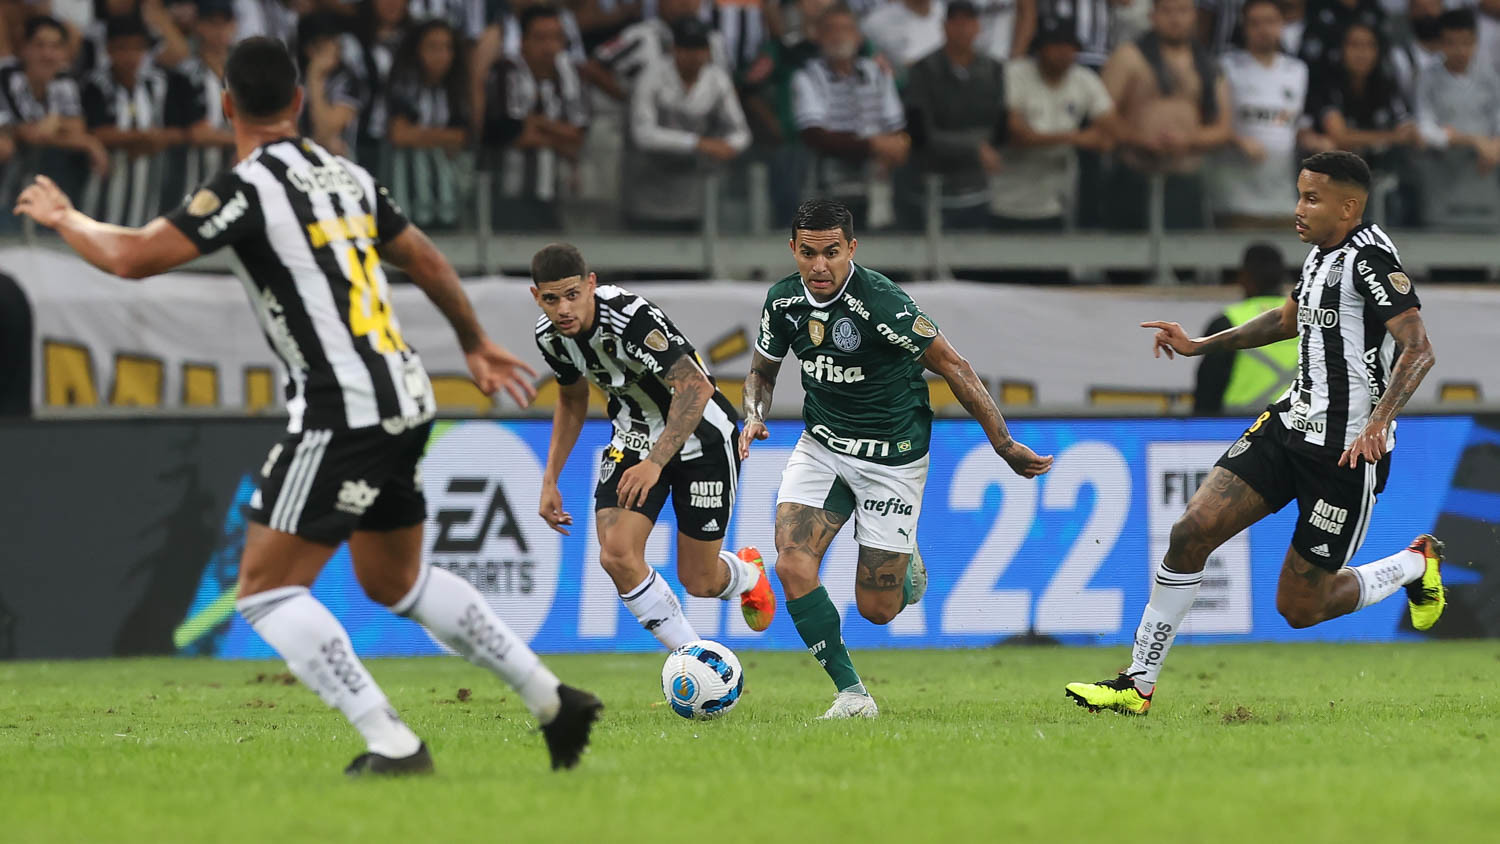 A Gazeta  Campeonato Brasileiro: confira onde assistir aos jogos da 25ª  rodada